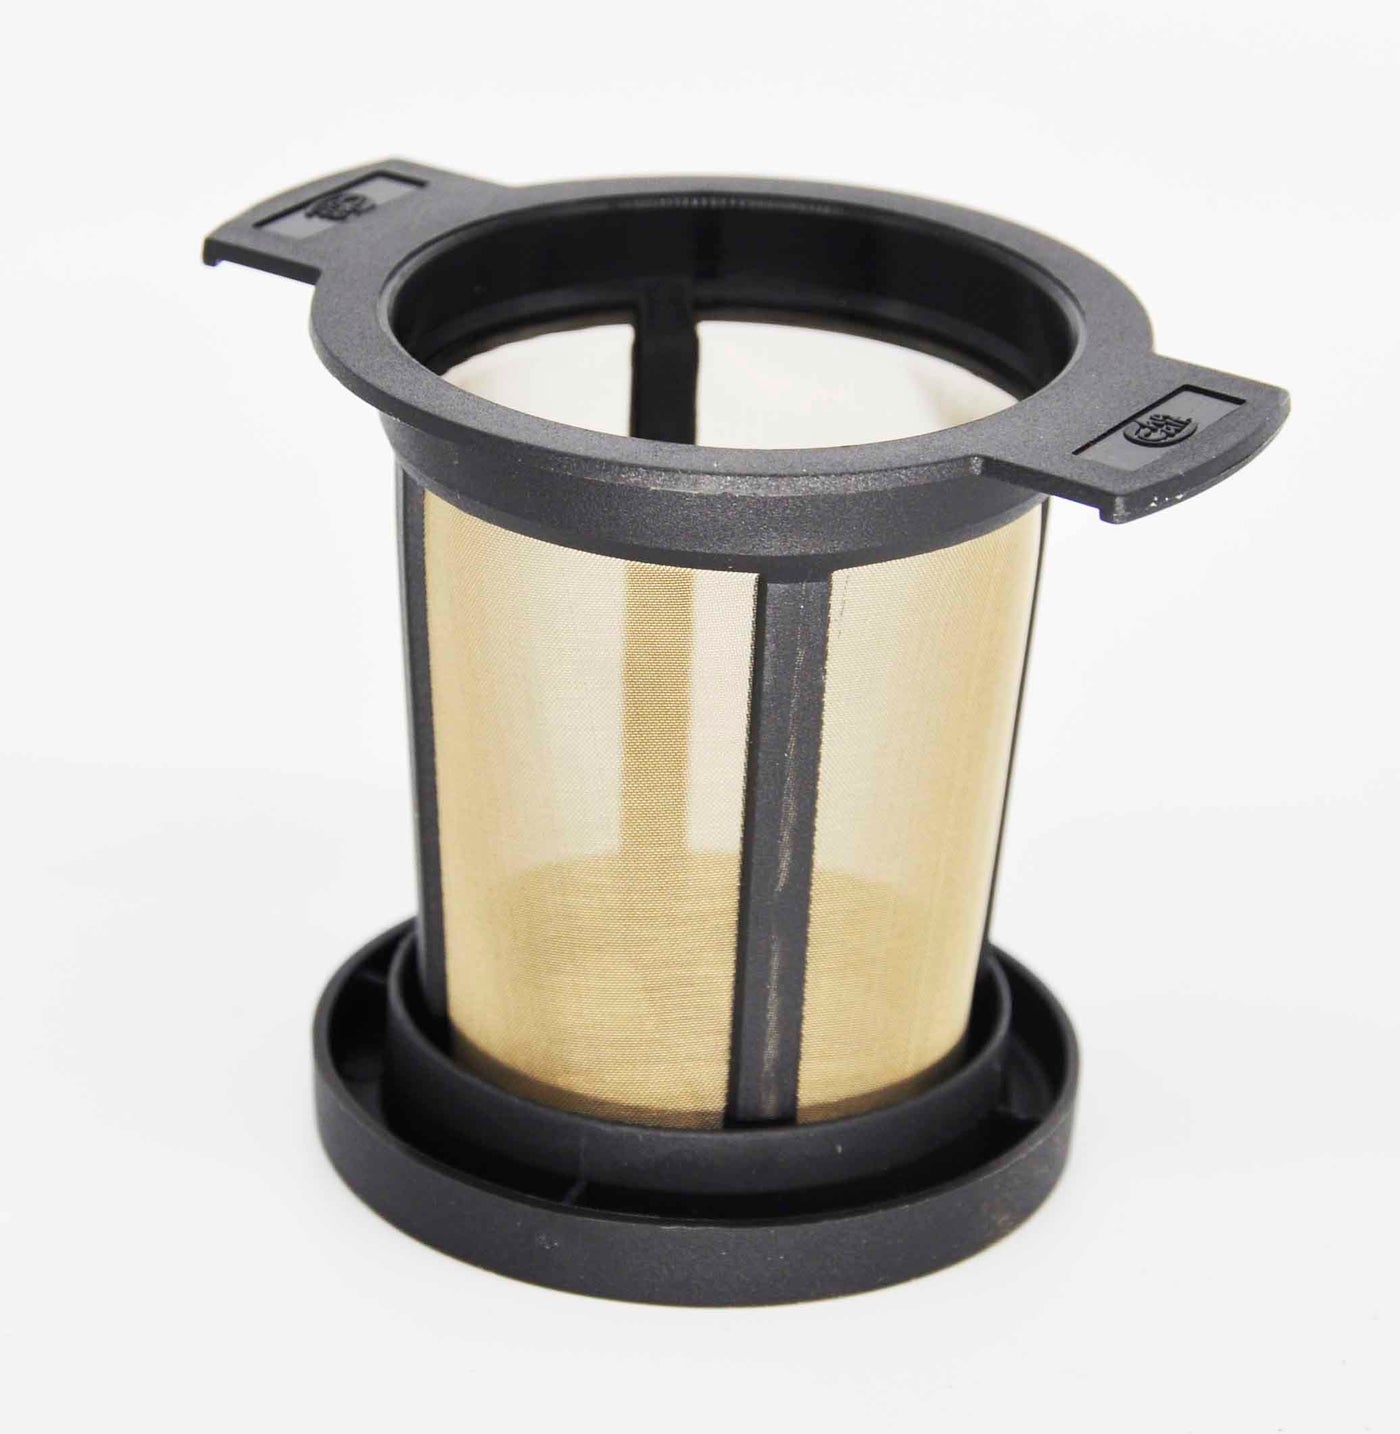 Lidded tea filter - Single cup-Regular-Loose Leaf Tea-High Teas